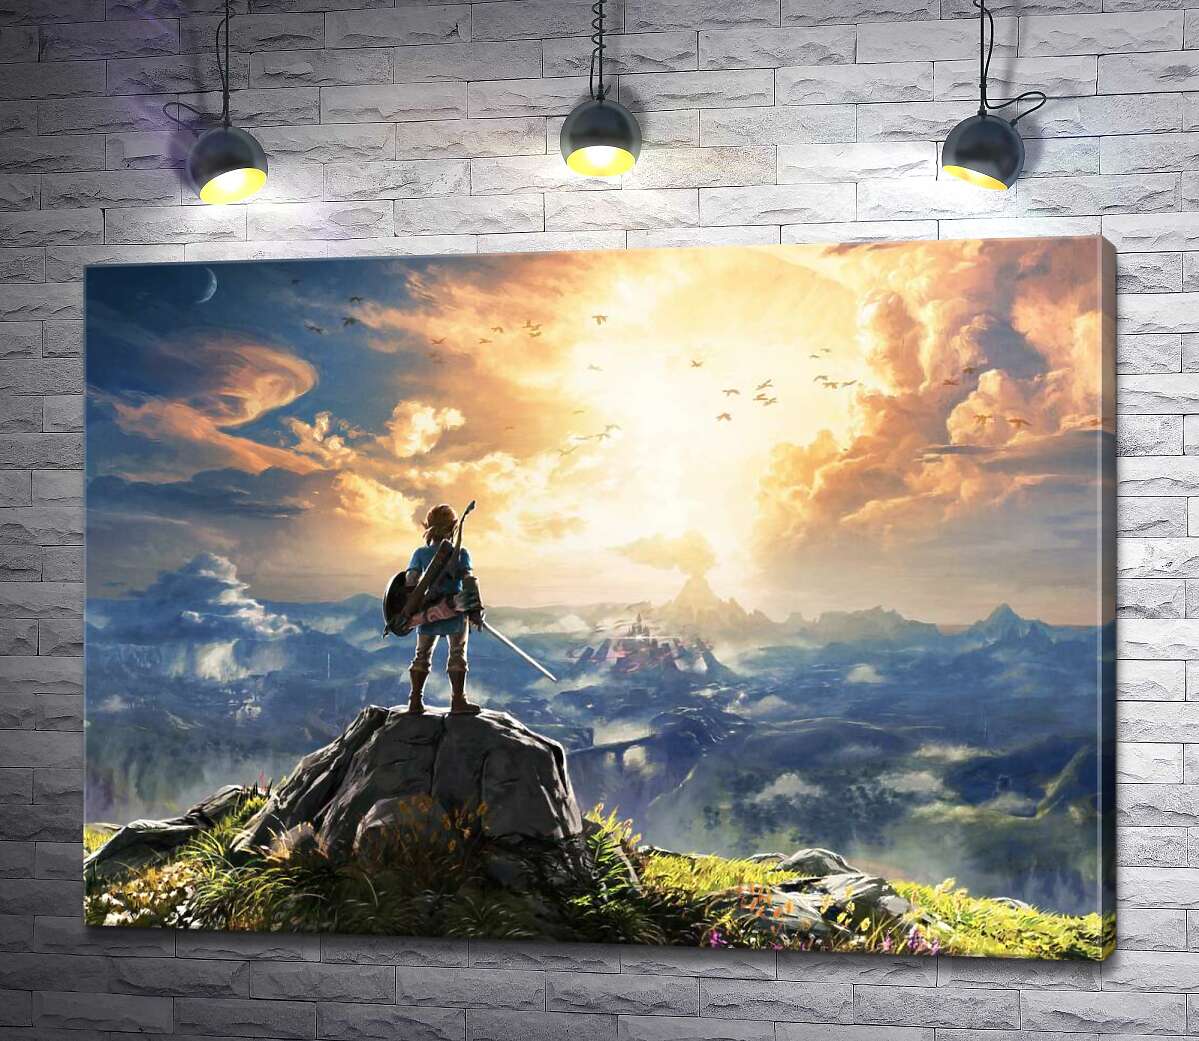 картина Герой игры "The Legend of Zelda", Линк, смотрит на взрыв